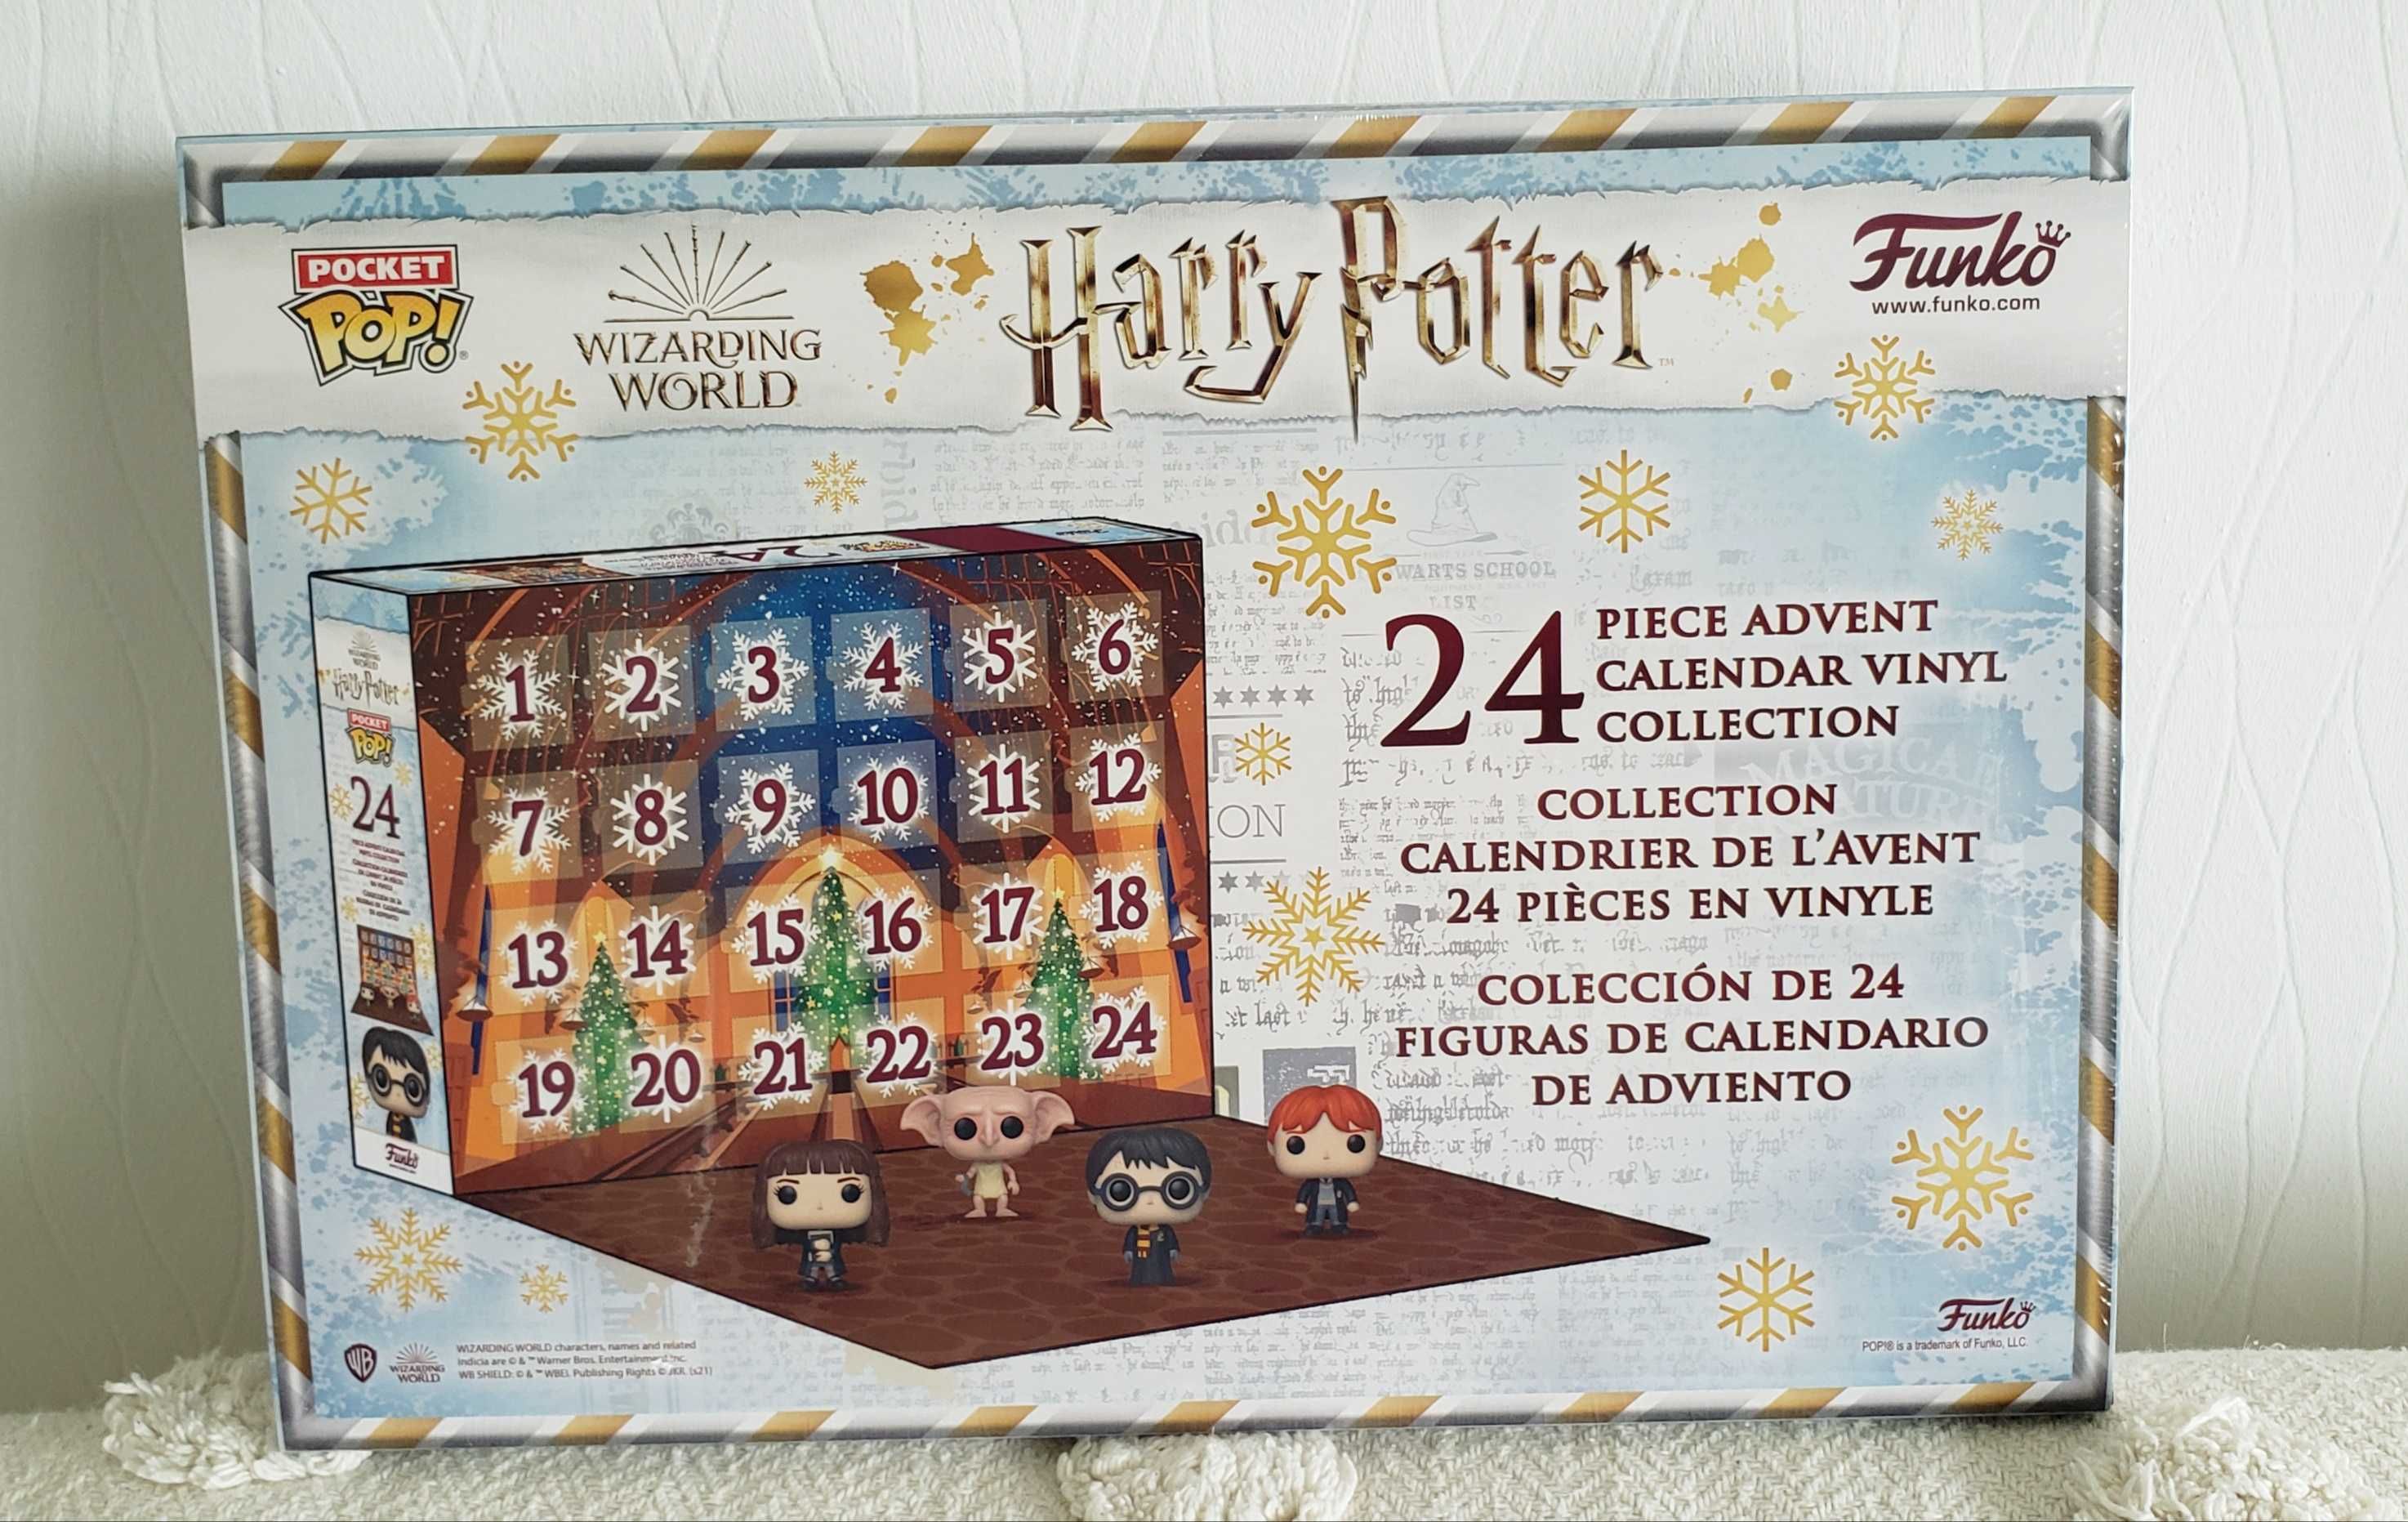 Harry Potter Funko Pop Kalendarz Adwentowy z roku 2021